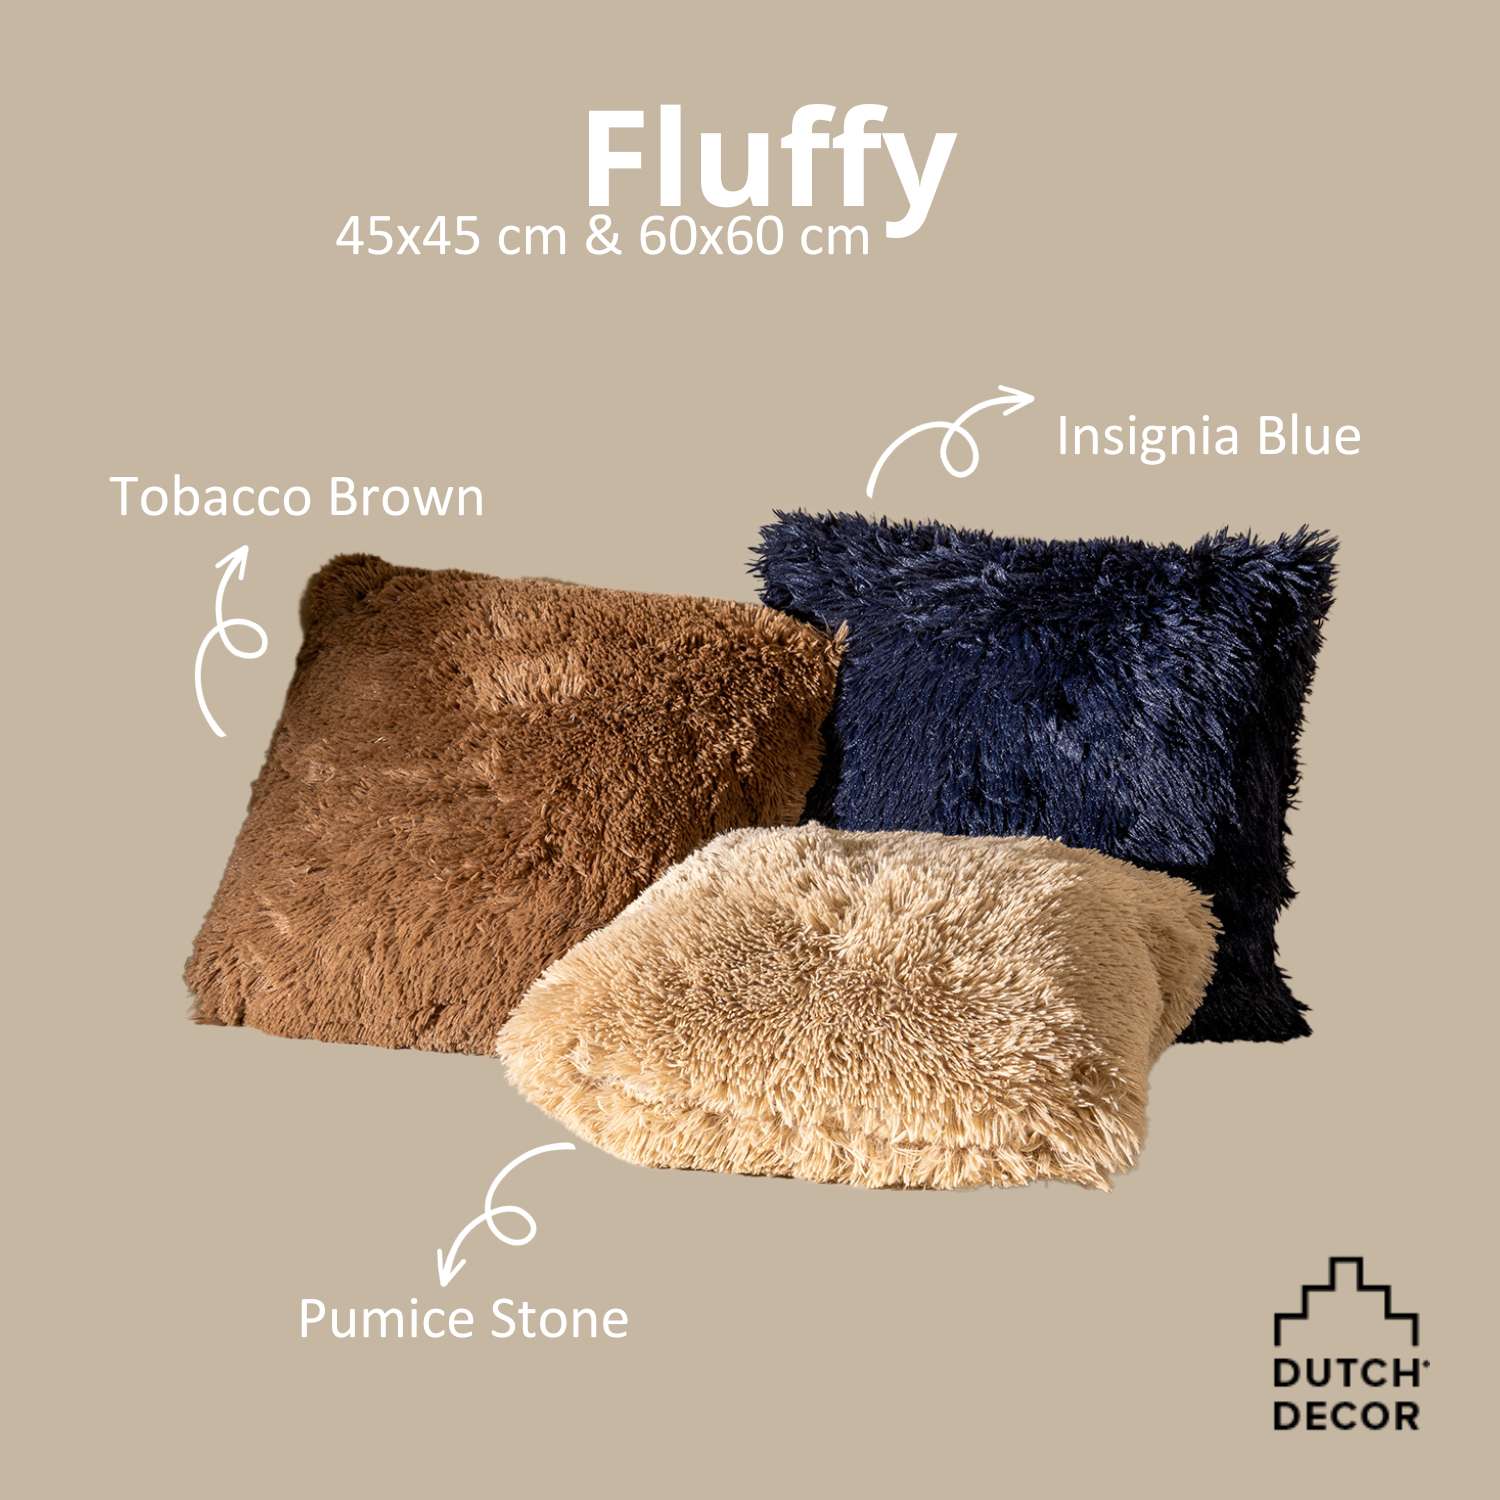 FLUFFY - Sierkussen 60x60 cm - superzacht - XL kussen - Insignia Blue - donkerblauw